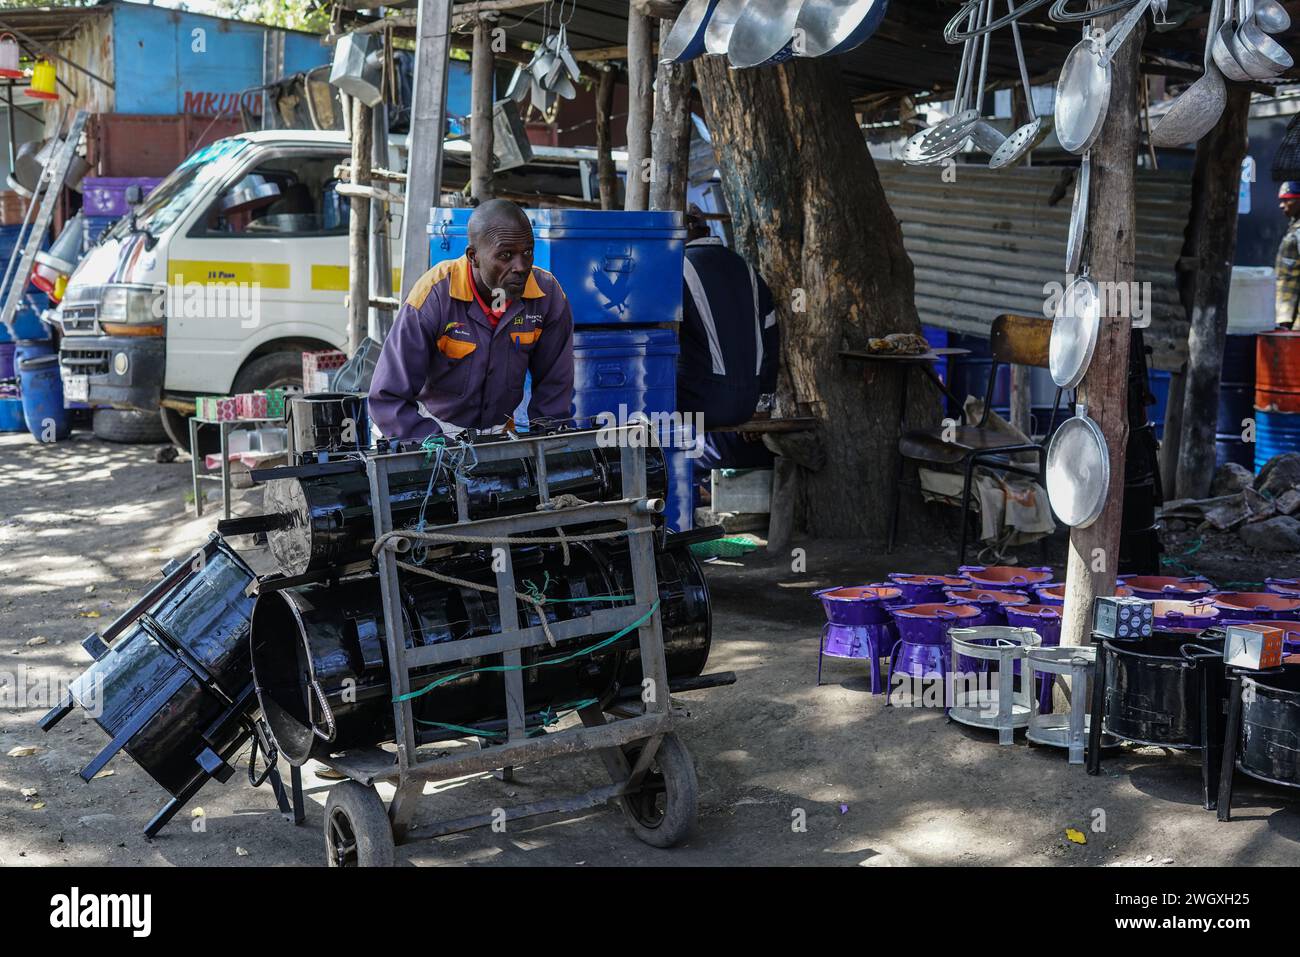 Un forgeron vu pousser un chariot au marché artisanal de Bama à Nakuru. Kenya Jua Kali le secteur informel emploie plus de 15 millions de Kenyans possédant des compétences dans le travail artisanal. Banque D'Images